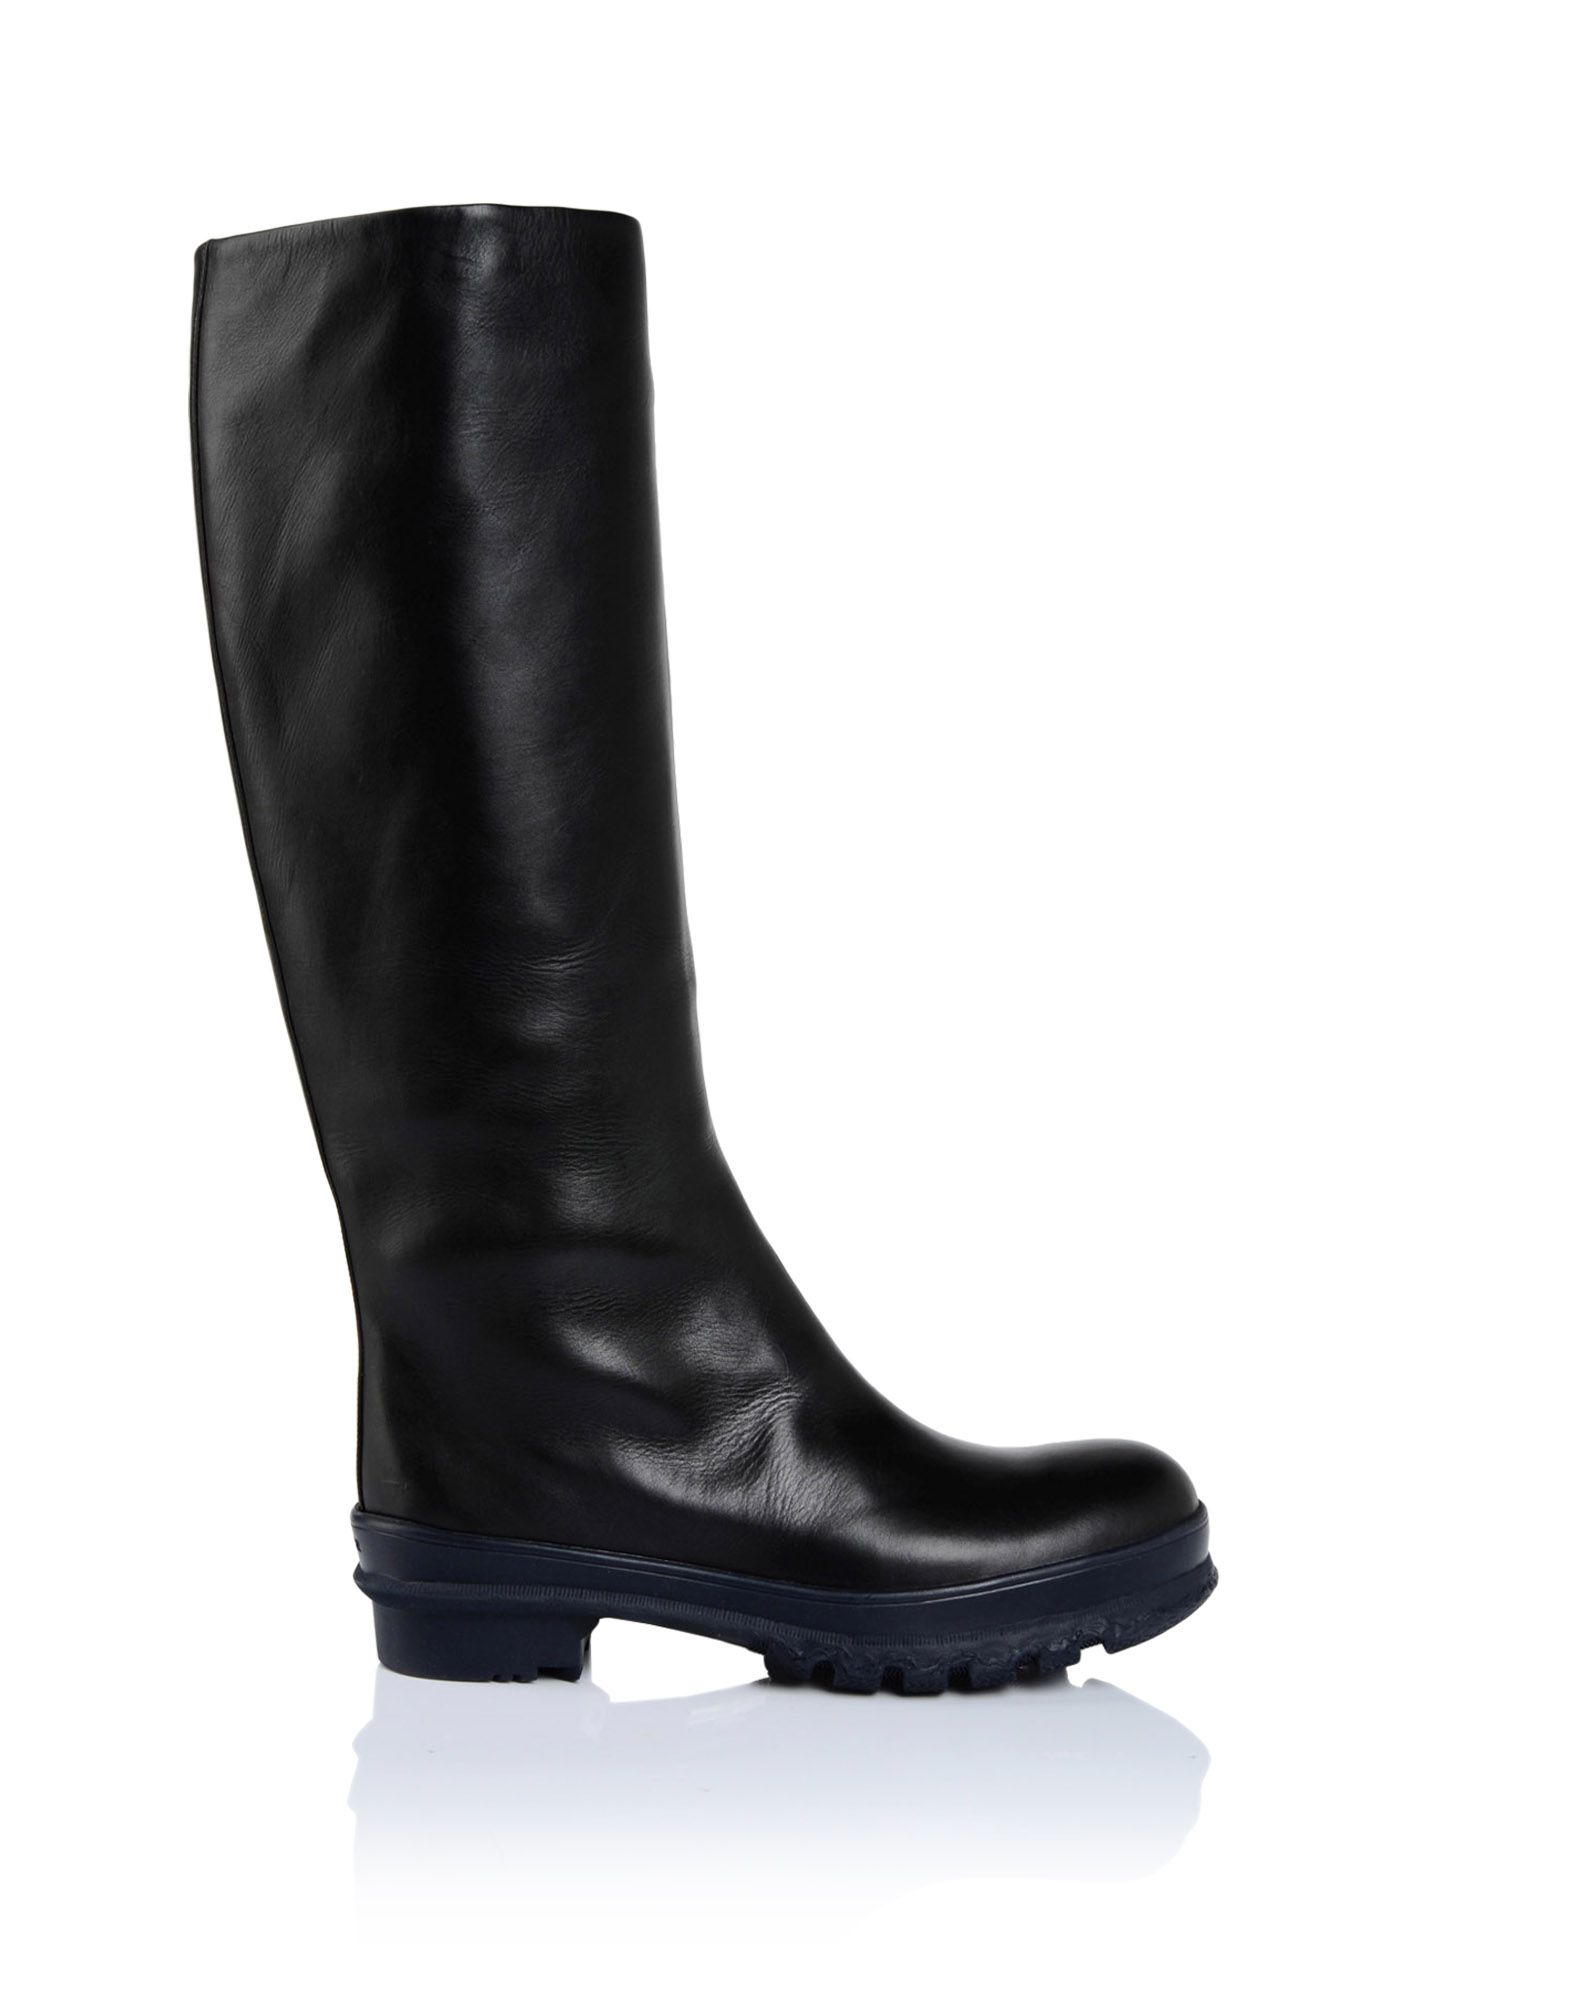 Boots Women - Shoes Women on Jil Sander Online Store